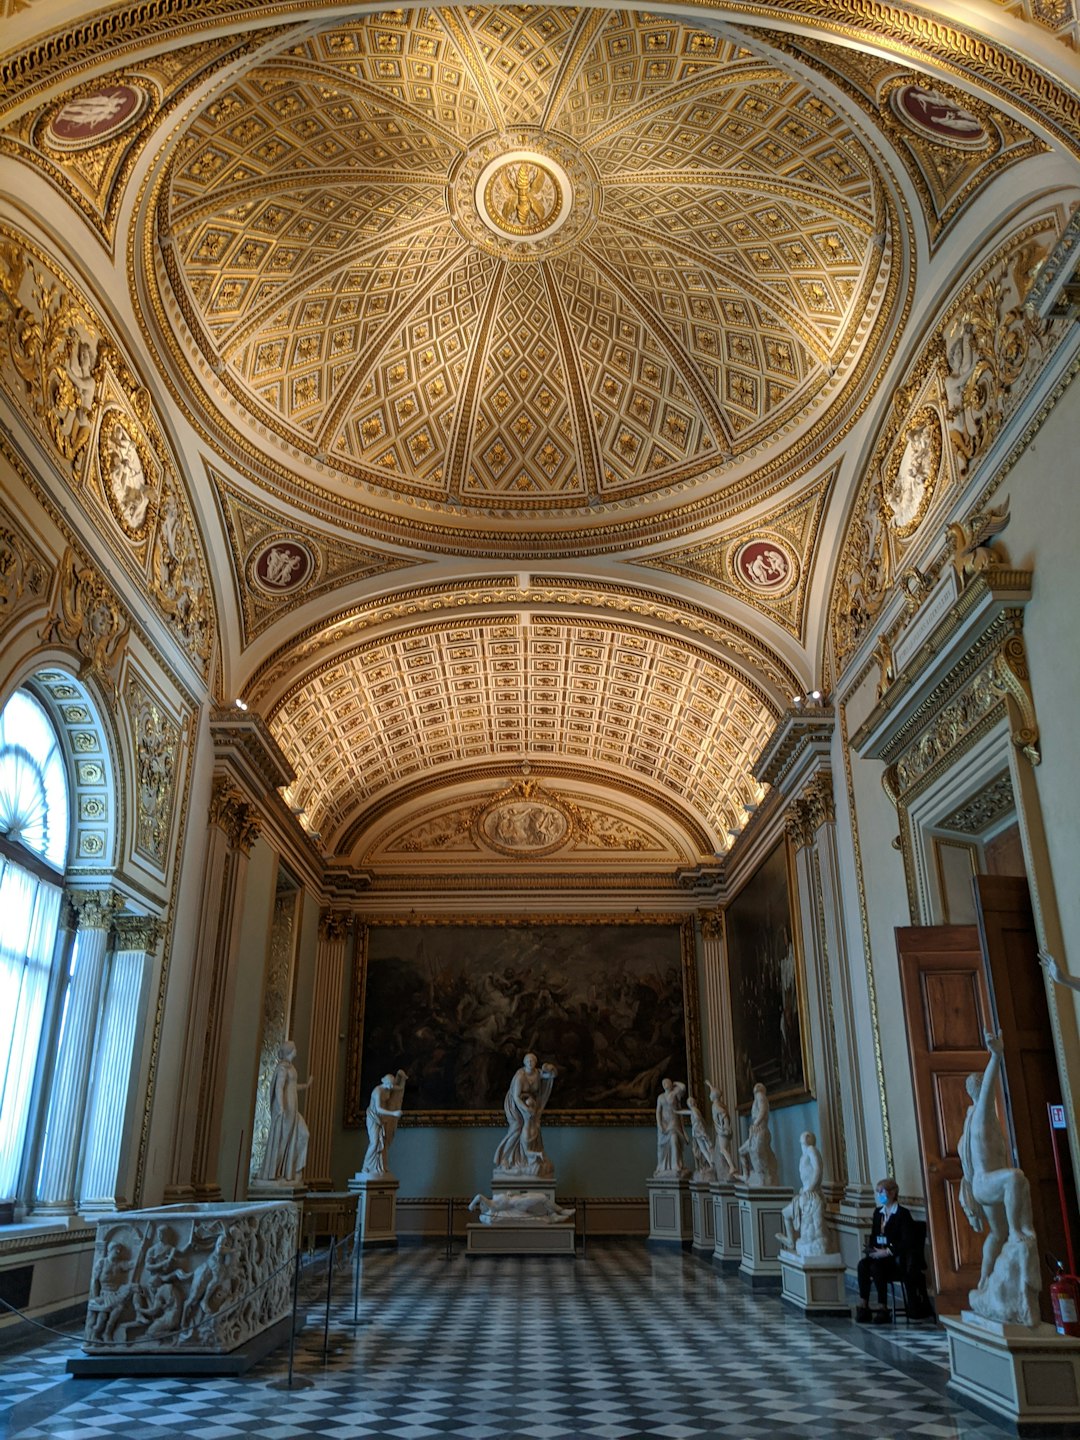 Basilica photo spot Uffizi Gallery Italy